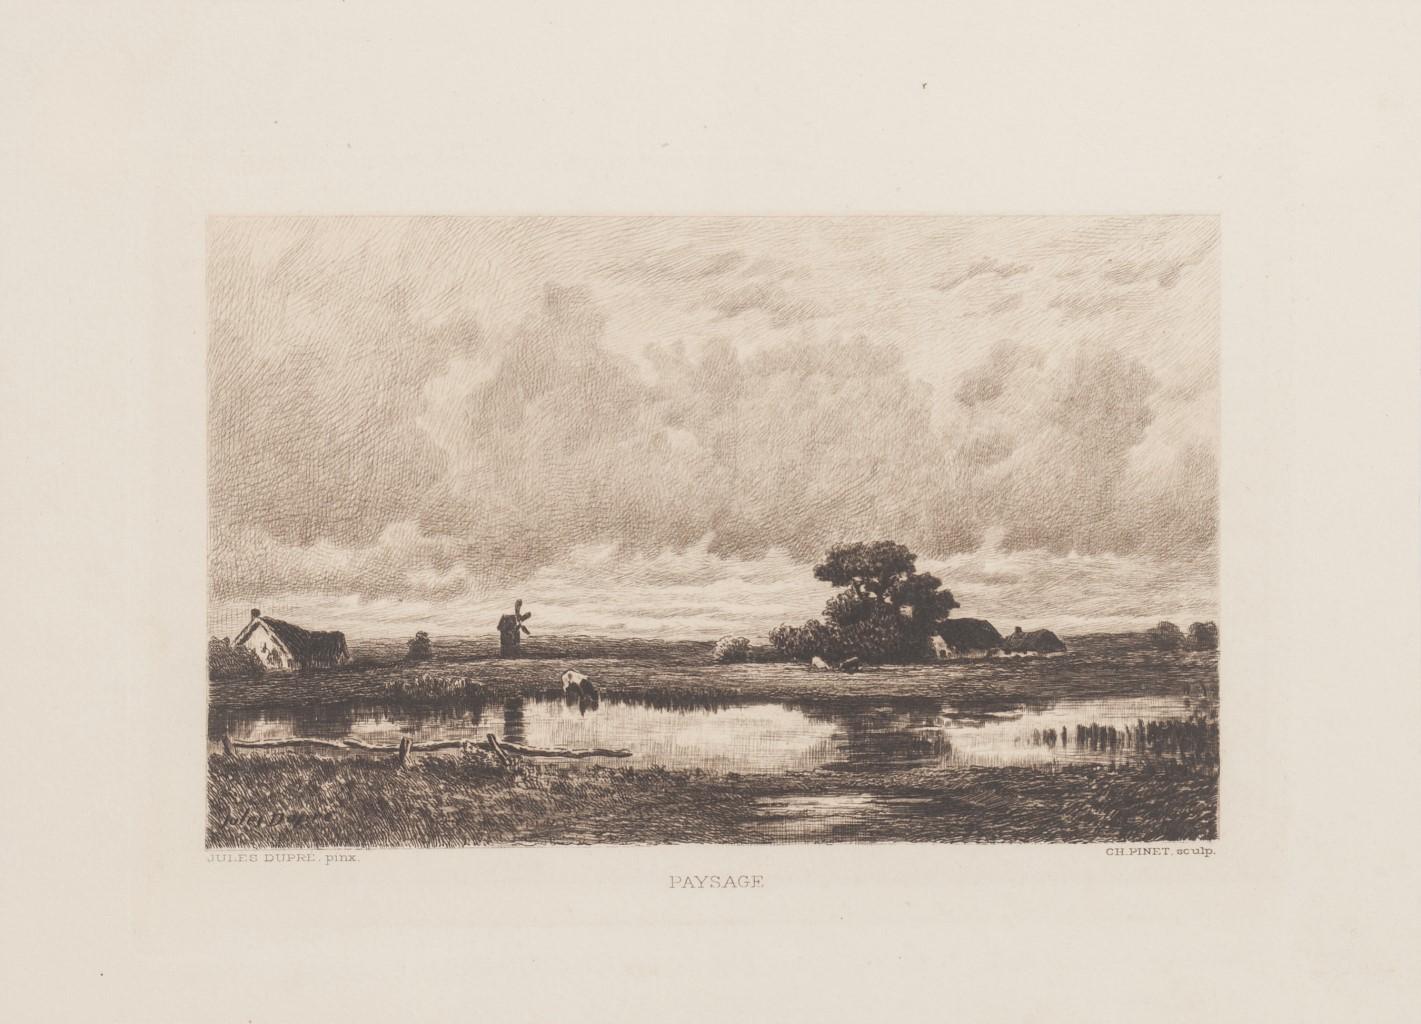 Jules Dupré & Ch. Pinet Figurative Print - Paysage - Original Etching by C. Pinet after Jules Dupré - 19th Century